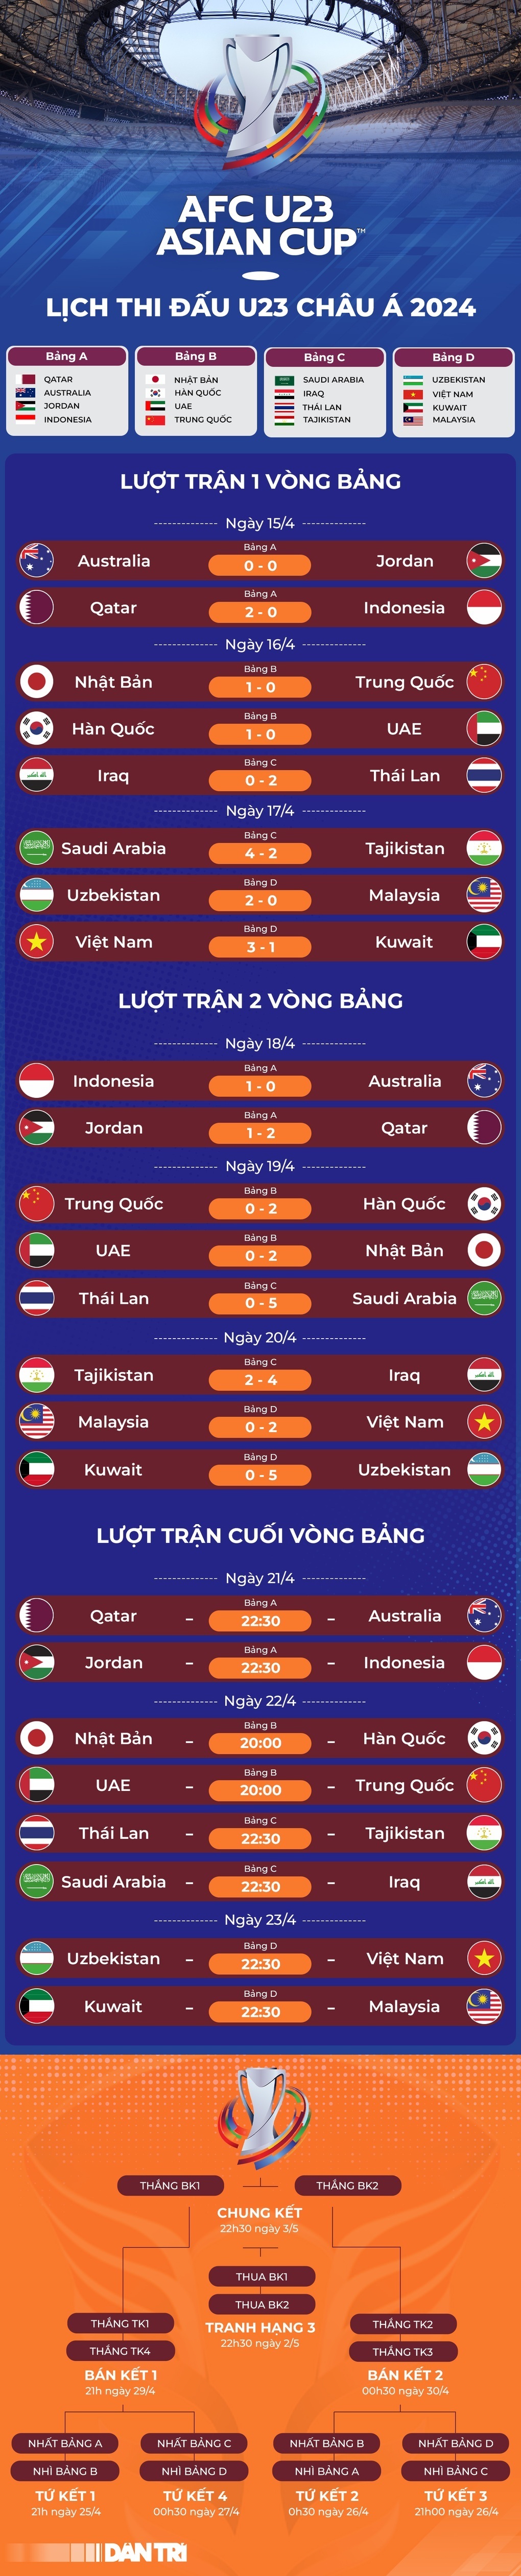 View - Malaysia tố cáo U23 Việt Nam, chỉ trích trọng tài thiên vị | Báo Dân trí